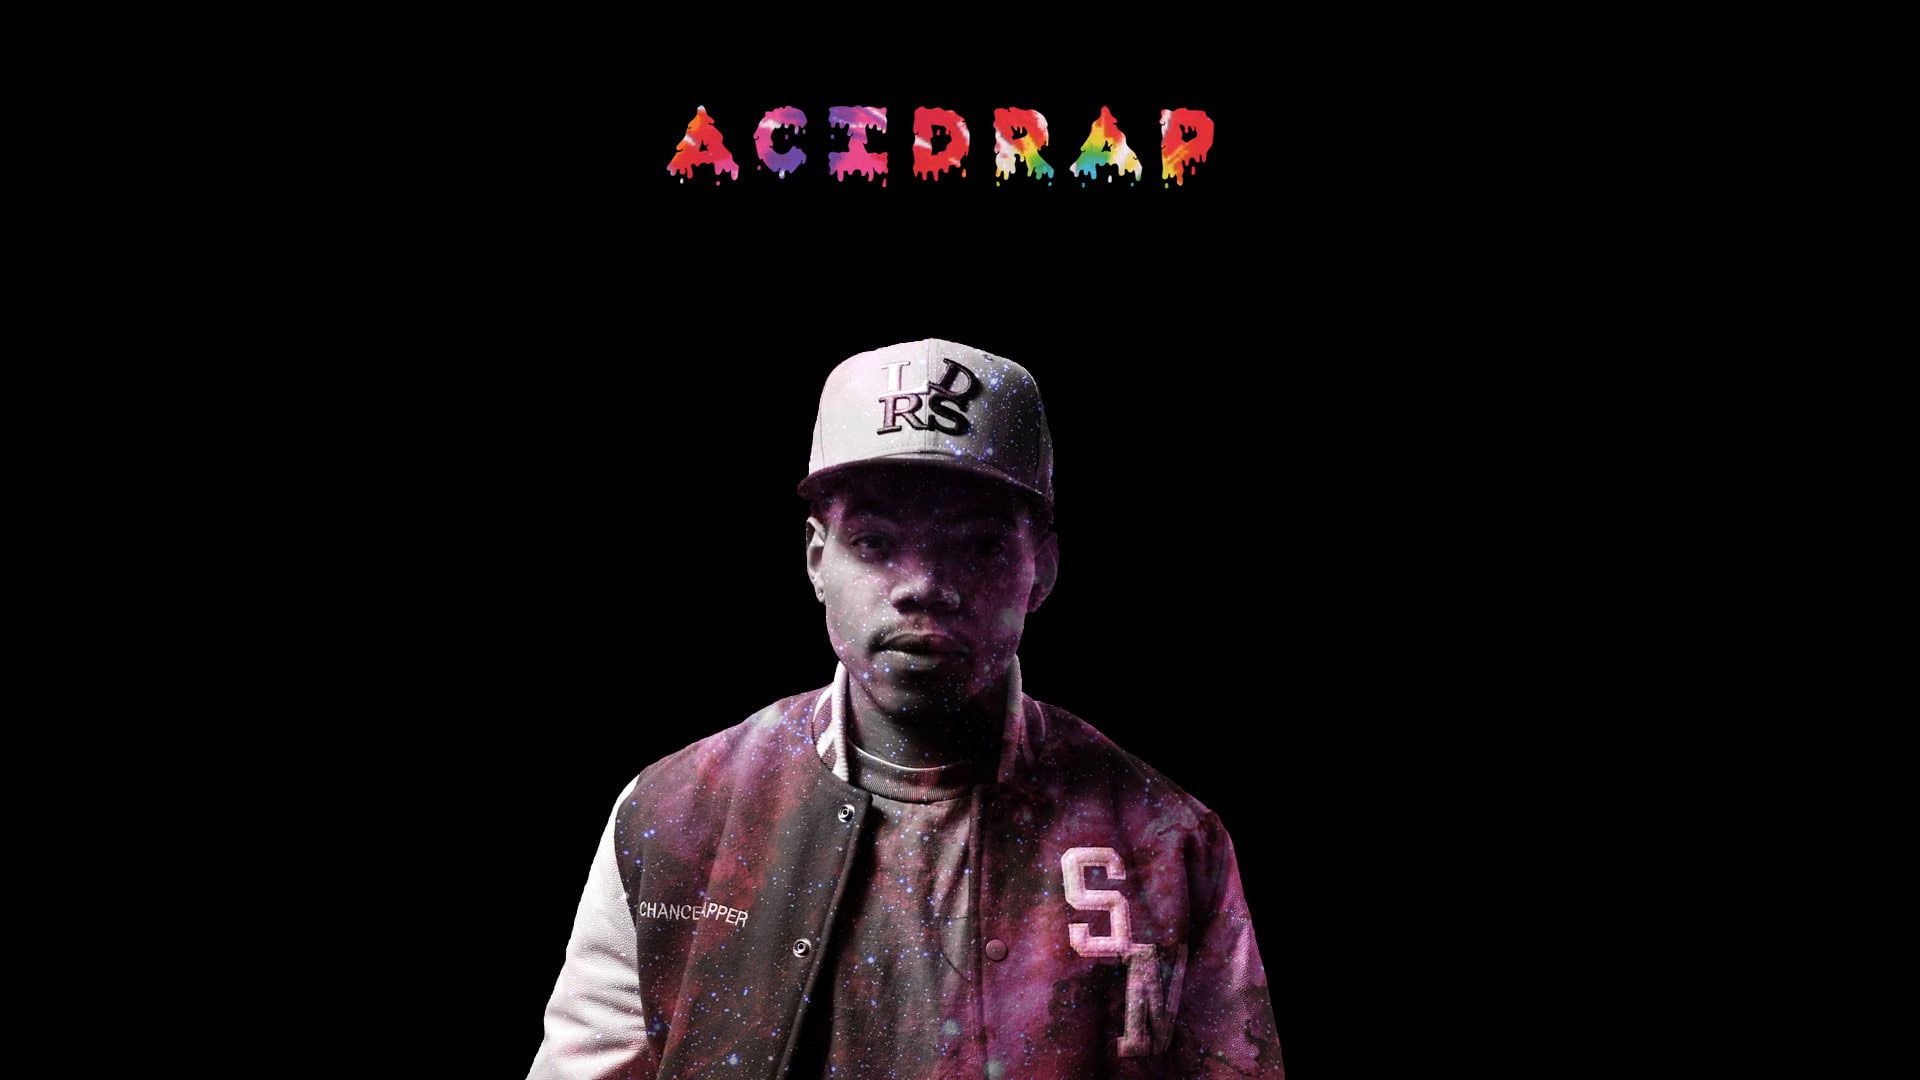 Chance the Rapper Acid Rap wallpaper - Chance the Rapper